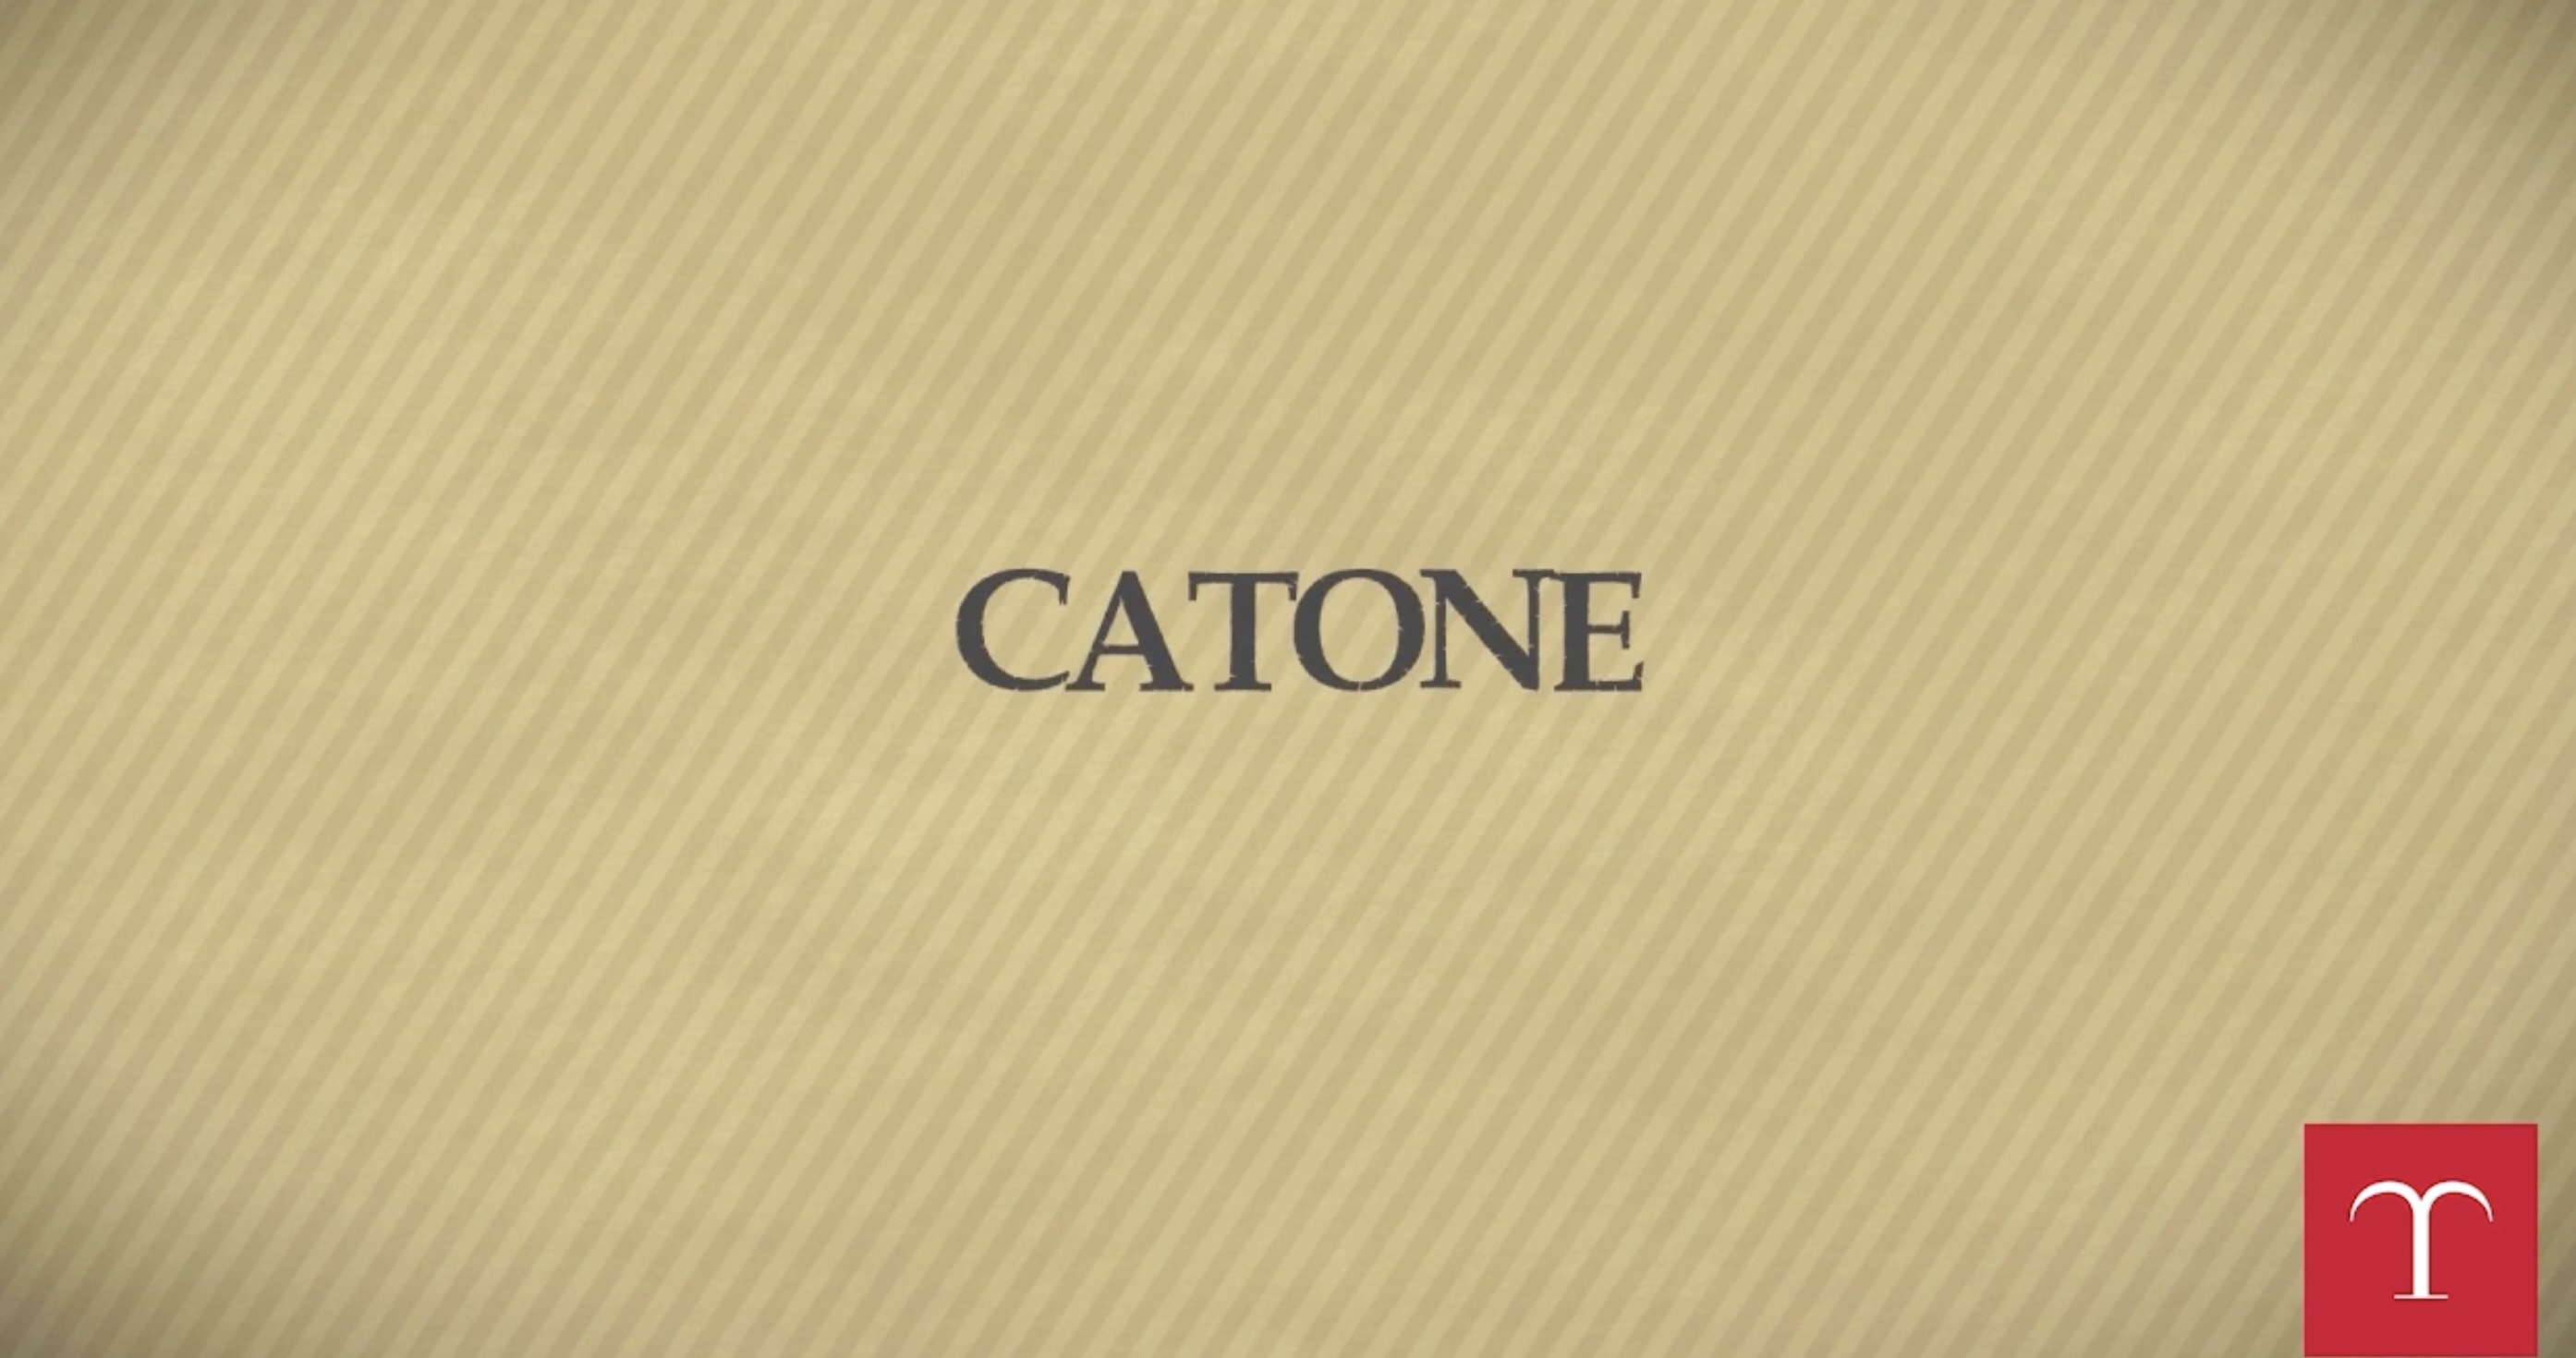 Catone